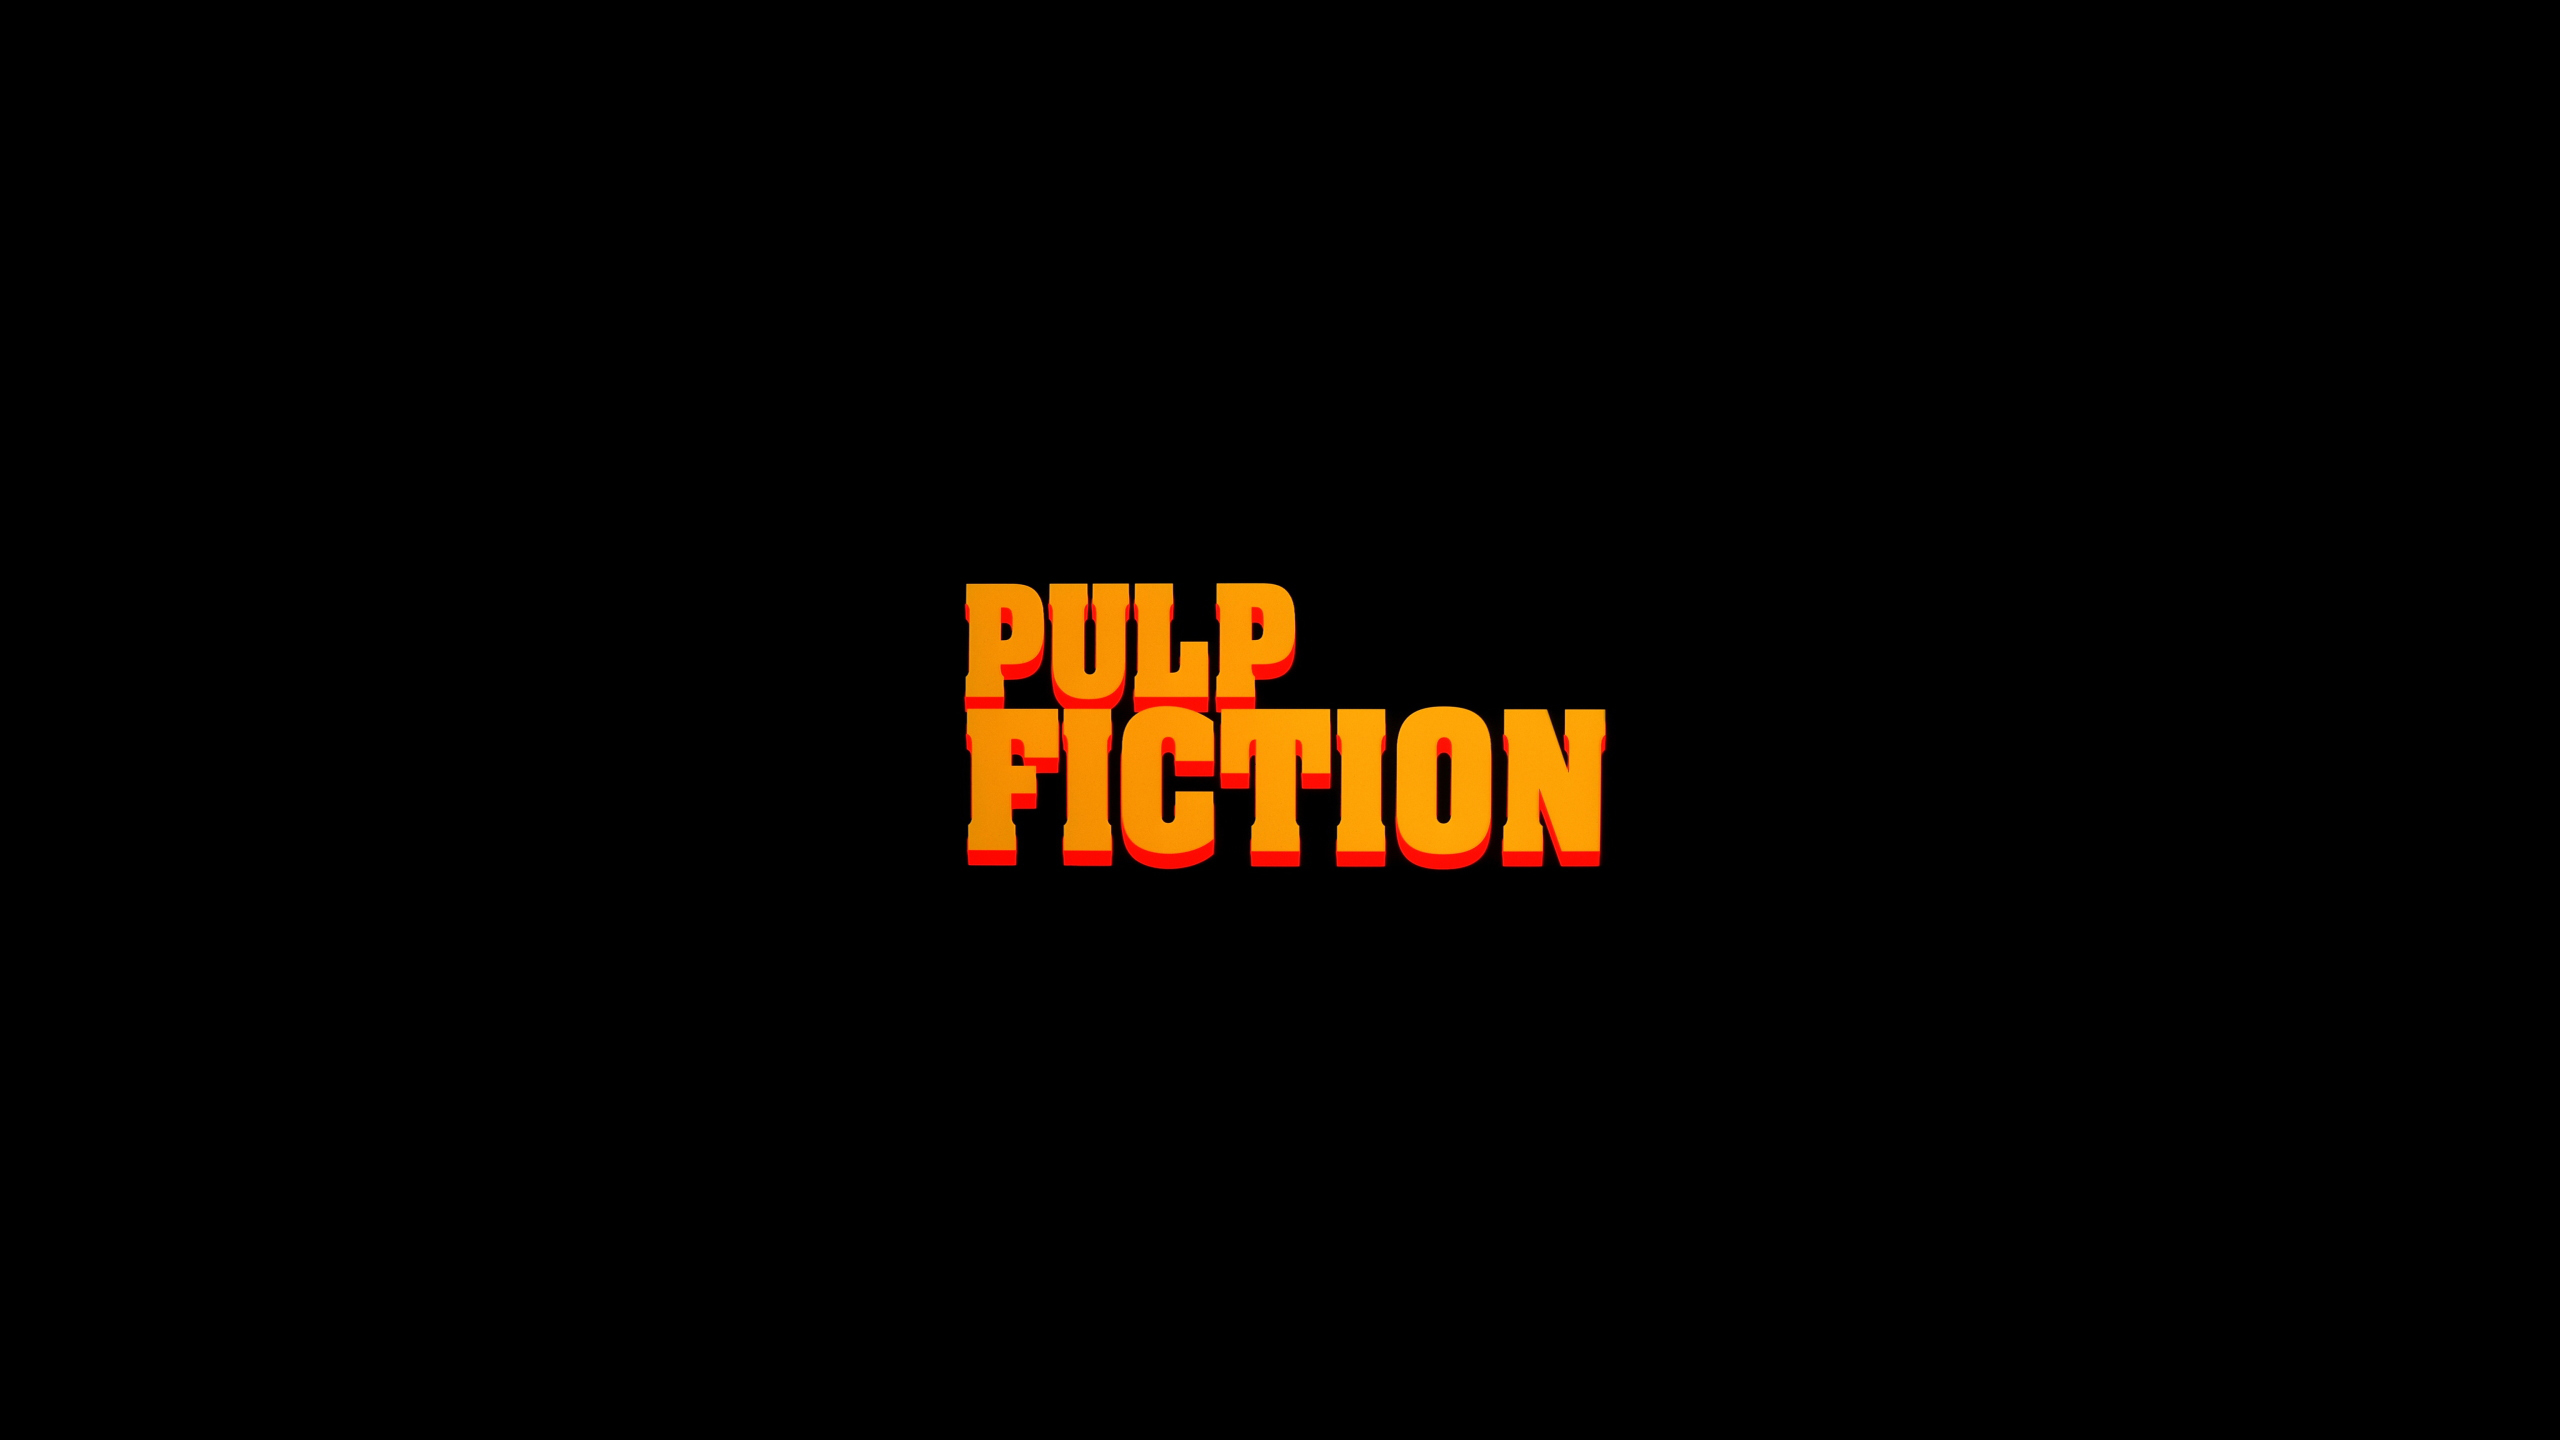 Pulp Fiction Title Wallpaper